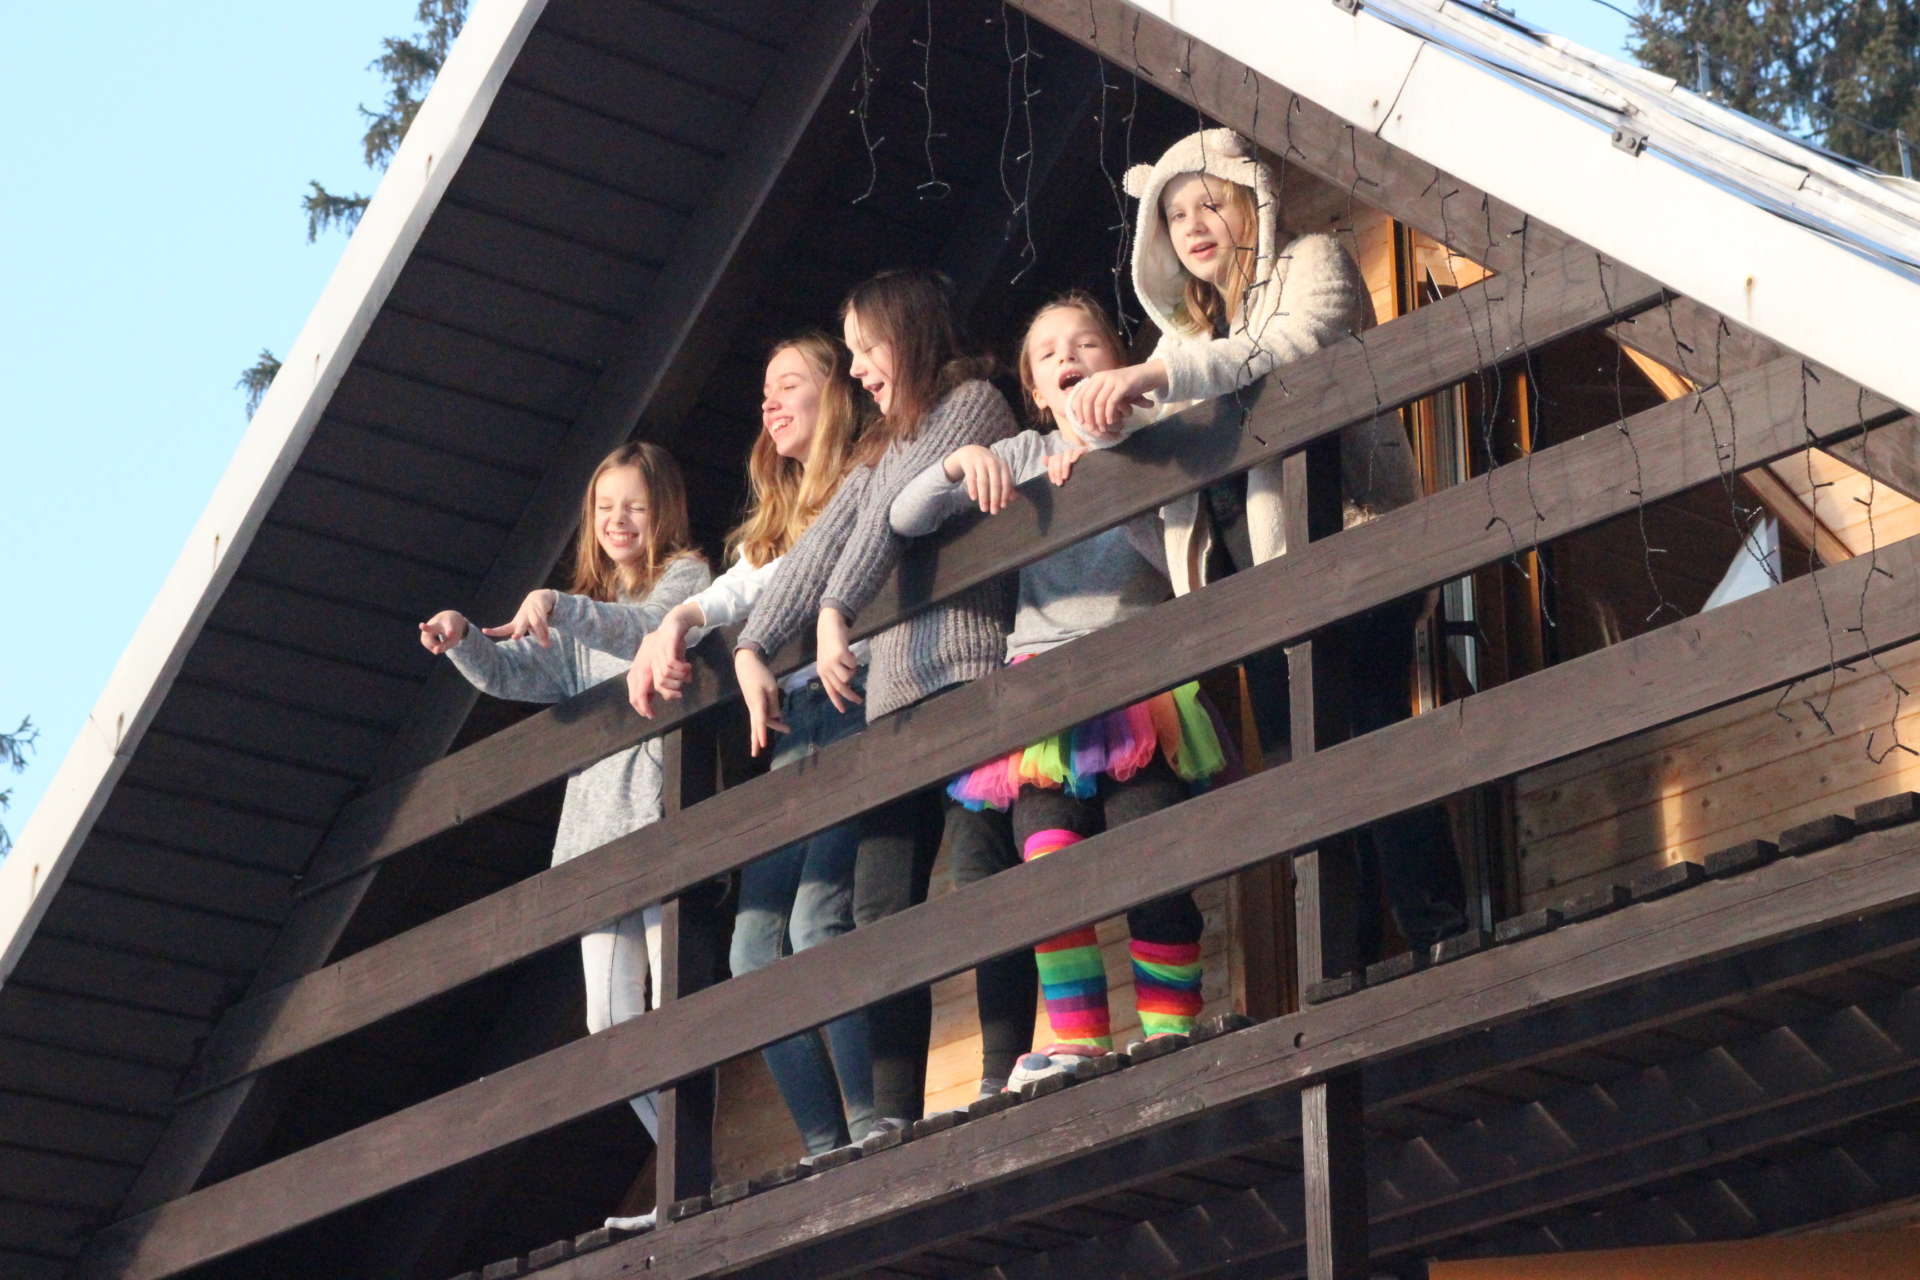 Dziewczyny tańczą na balkonie do "Shape of You" Eda Sheerana.